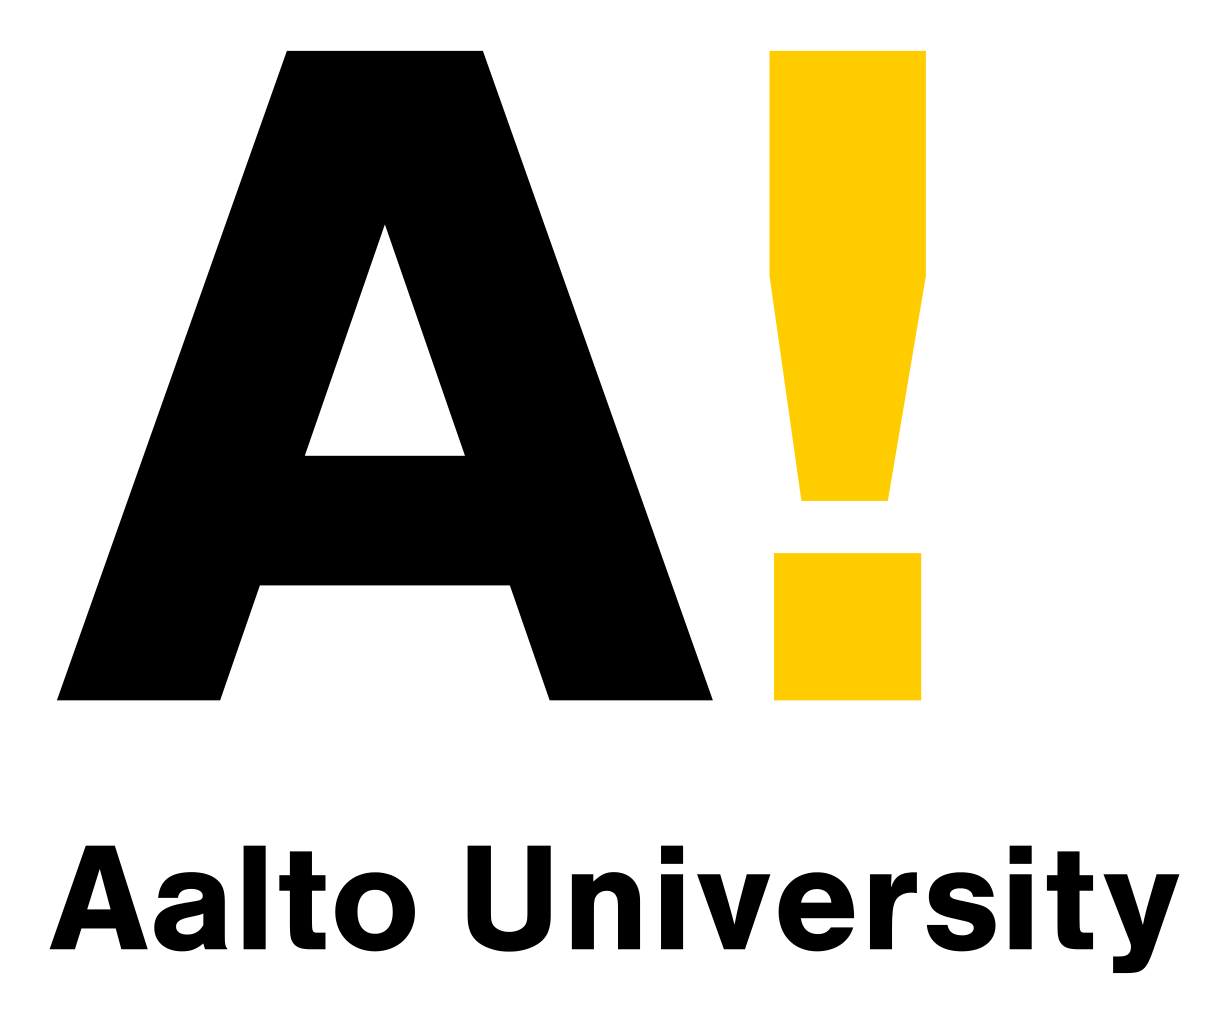 پرونده: دانشگاه آلتو logo.svg - Wikimedia Commons